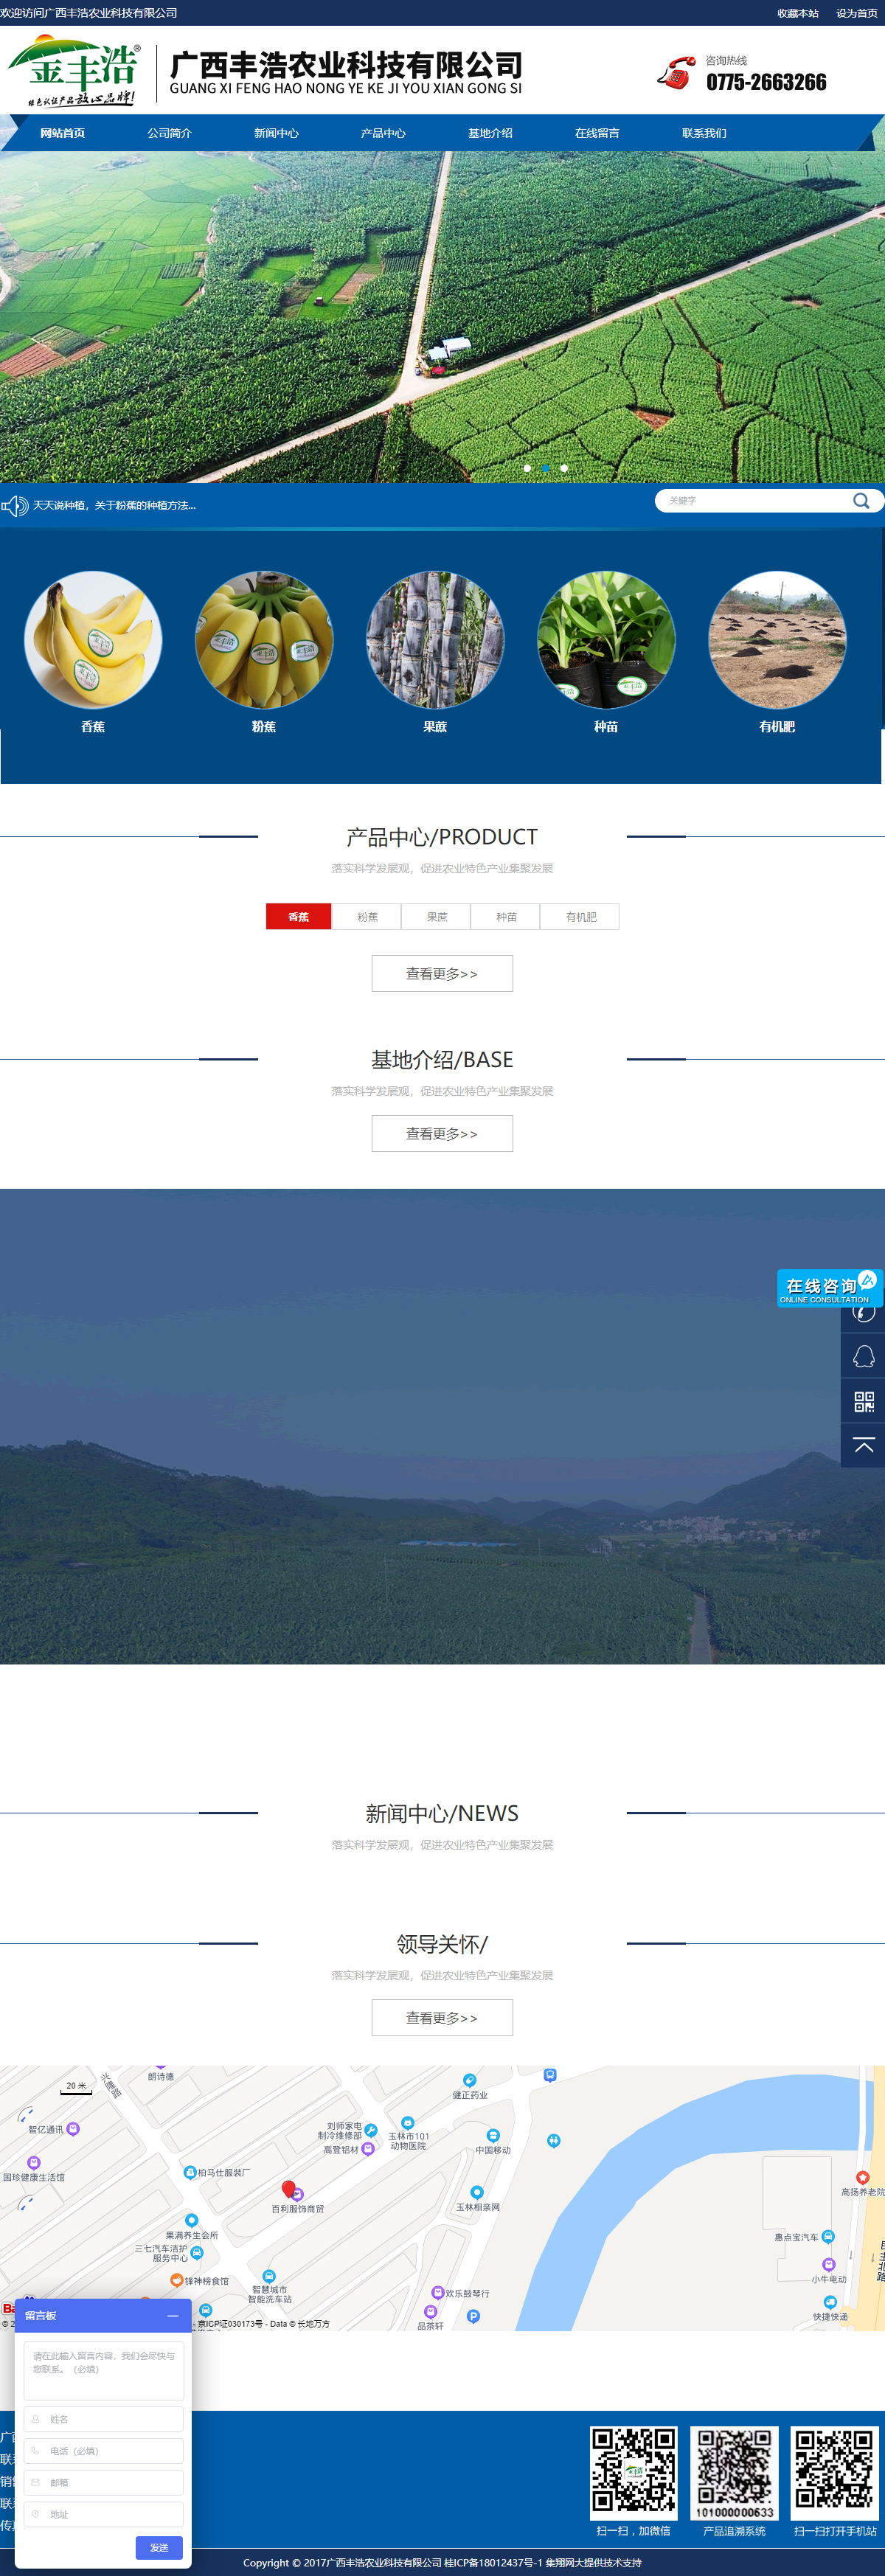 广西丰浩农业科技有限公司网站案例